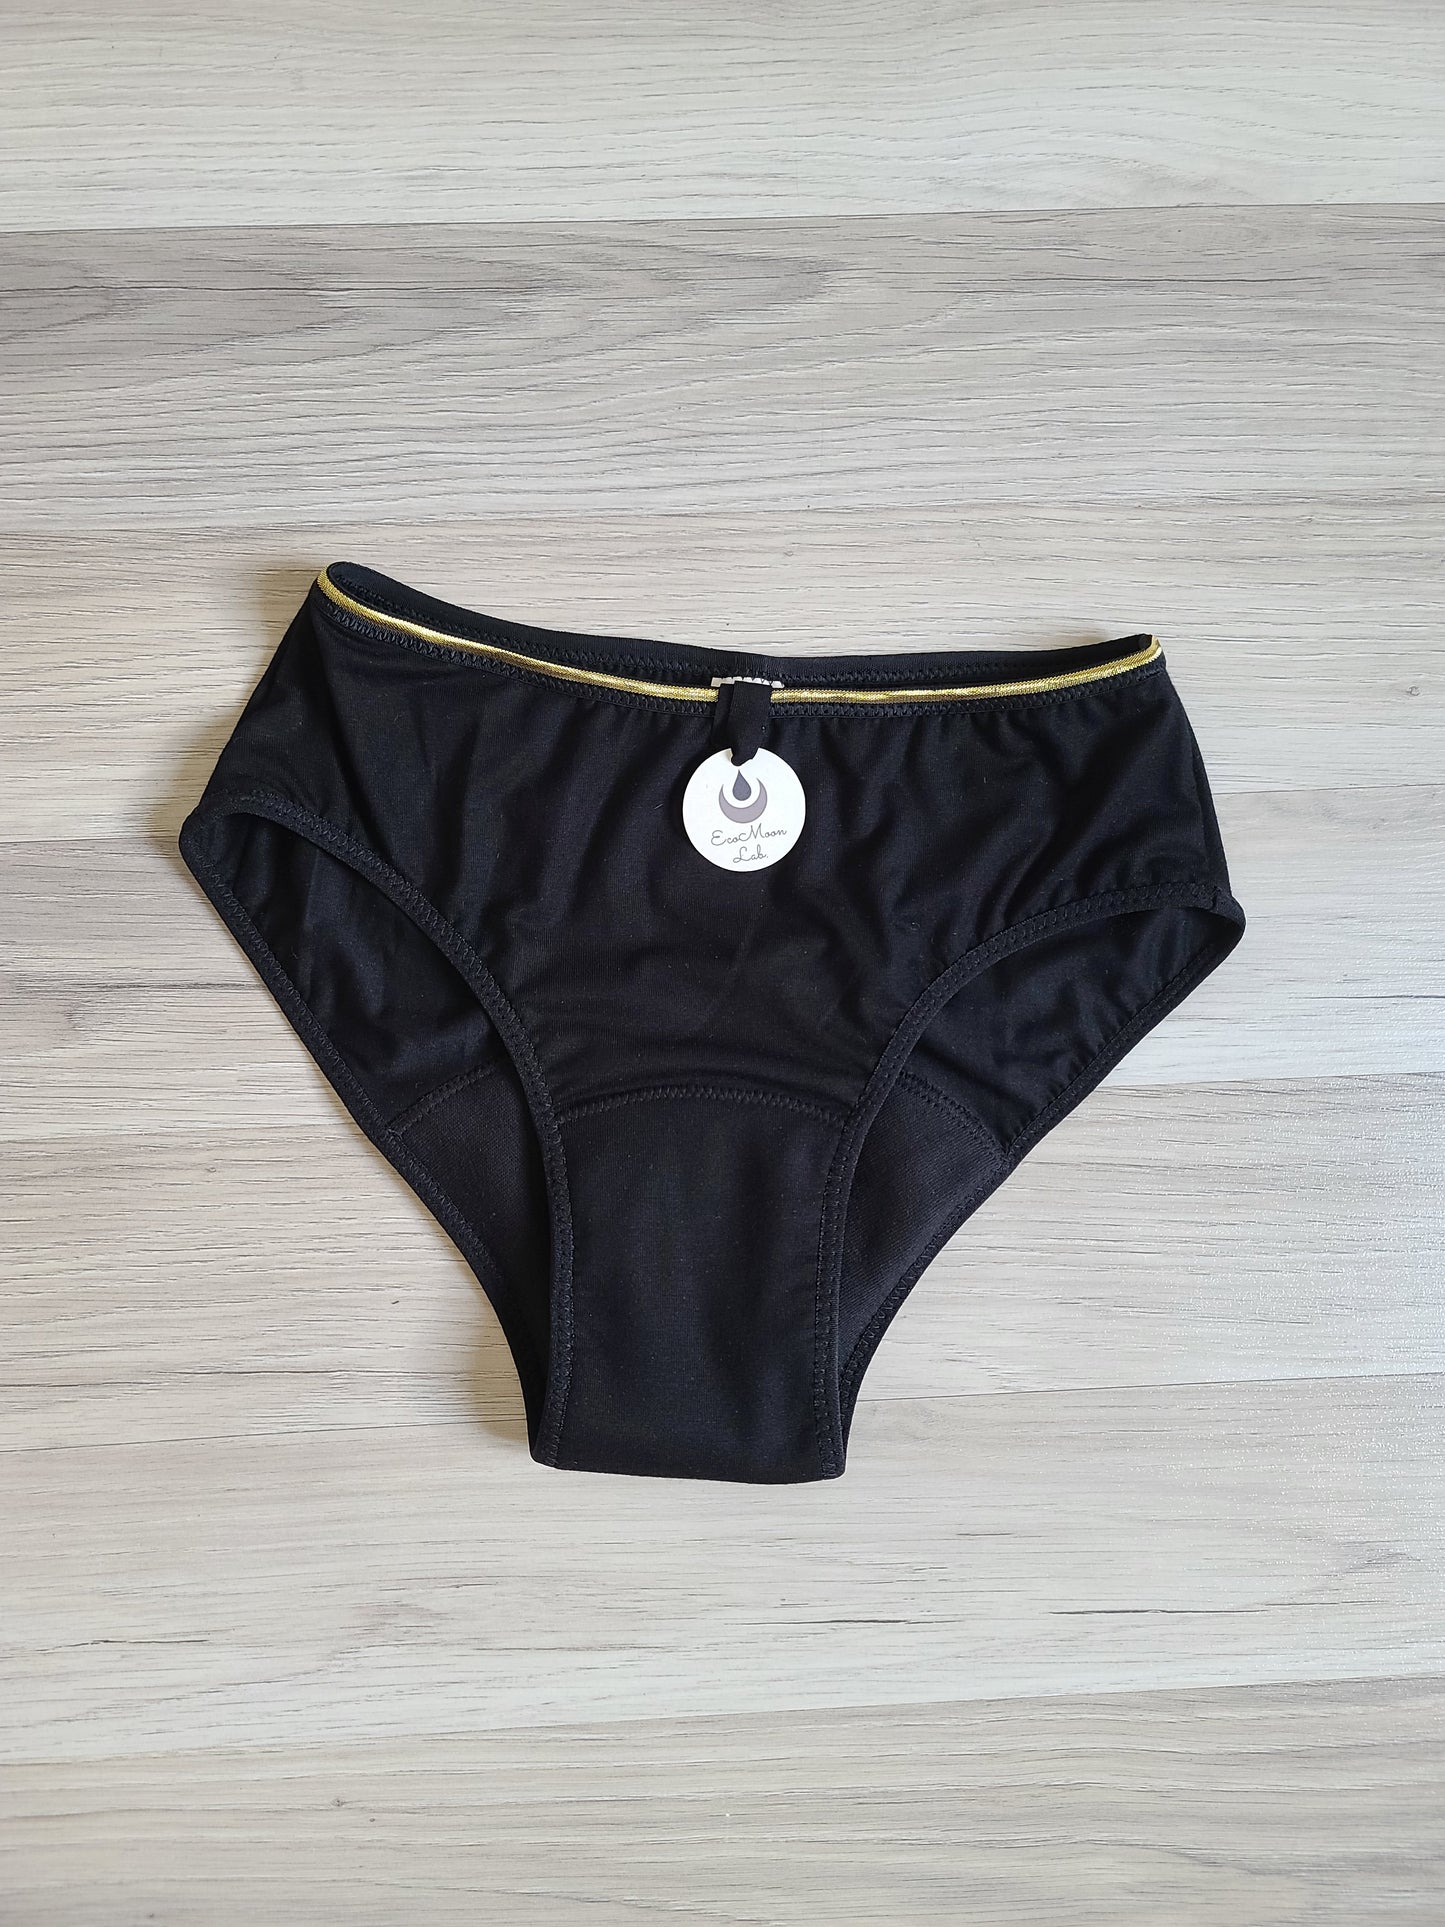 MoonNight Period underwear